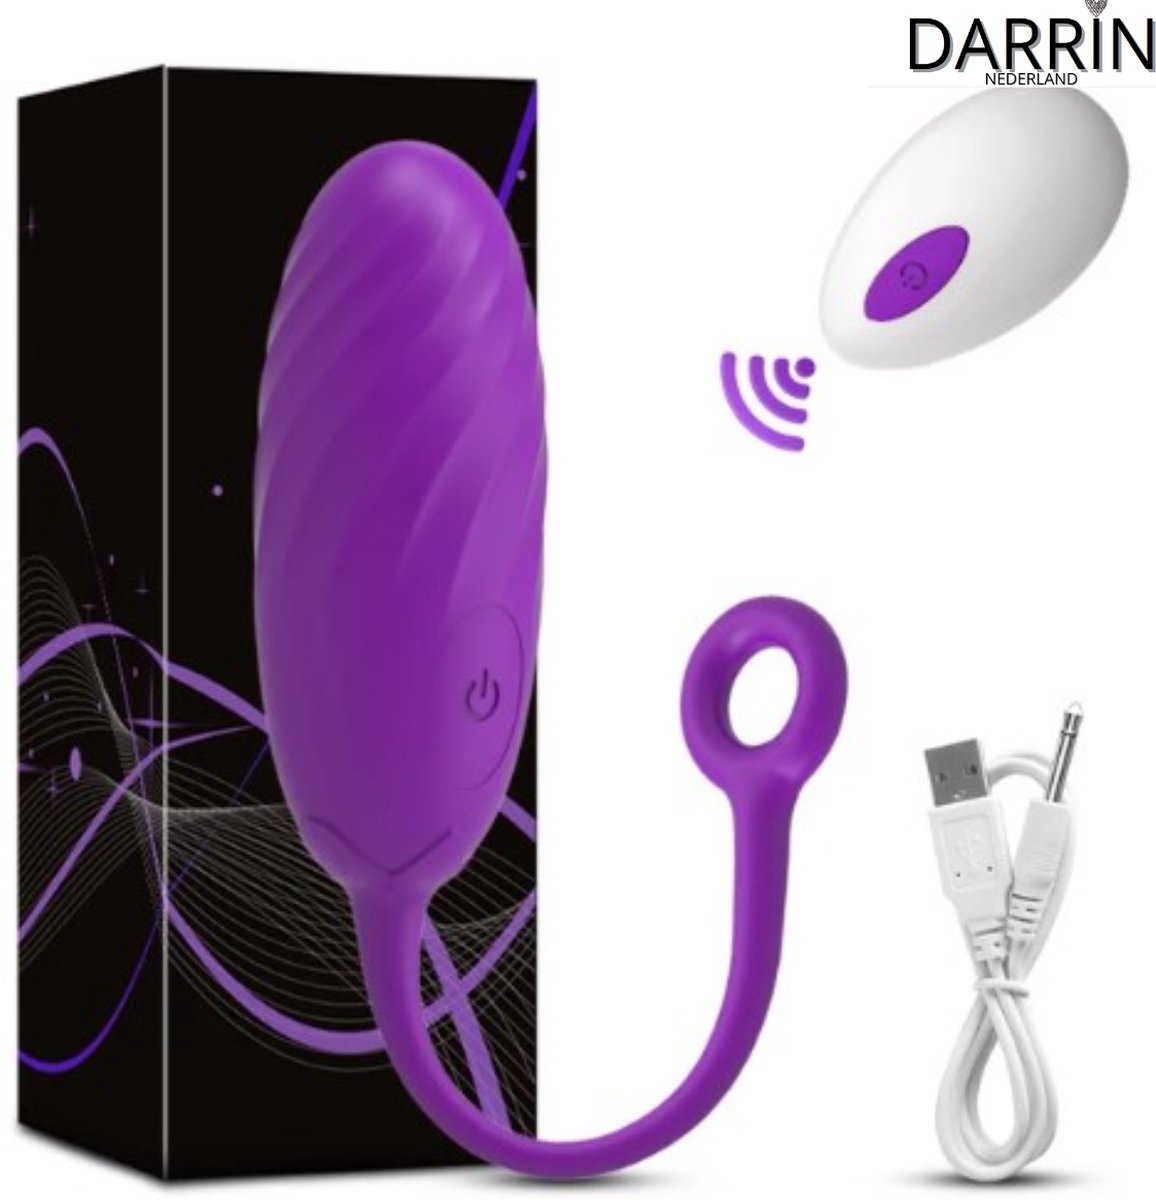 Draagbare Mini Vibrator Ei voor Vrouwen (Paars) - Clitorale Stimulatie - 10 Levels - G-spot - Vibrator voor Vrouwen - Seksspeeltje voor Koppels - Draadloze Afstandsbediening - Volwassen Seksspeeltje en Stimulator - Vibrerende Ei